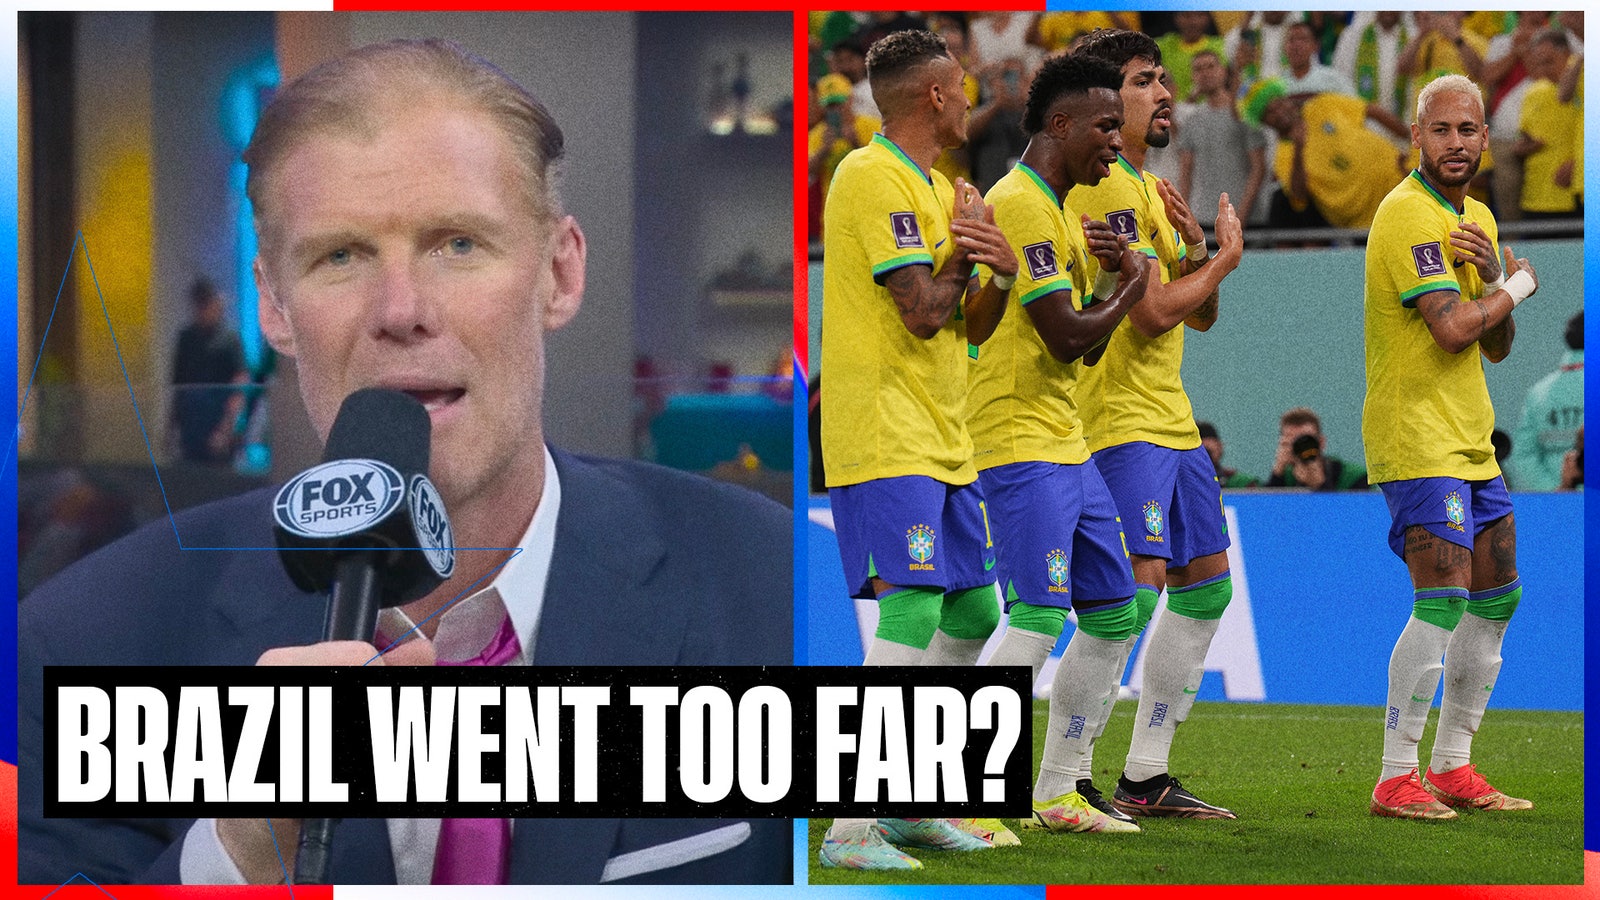 As comemorações do gol do Brasil foram desrespeitosas?